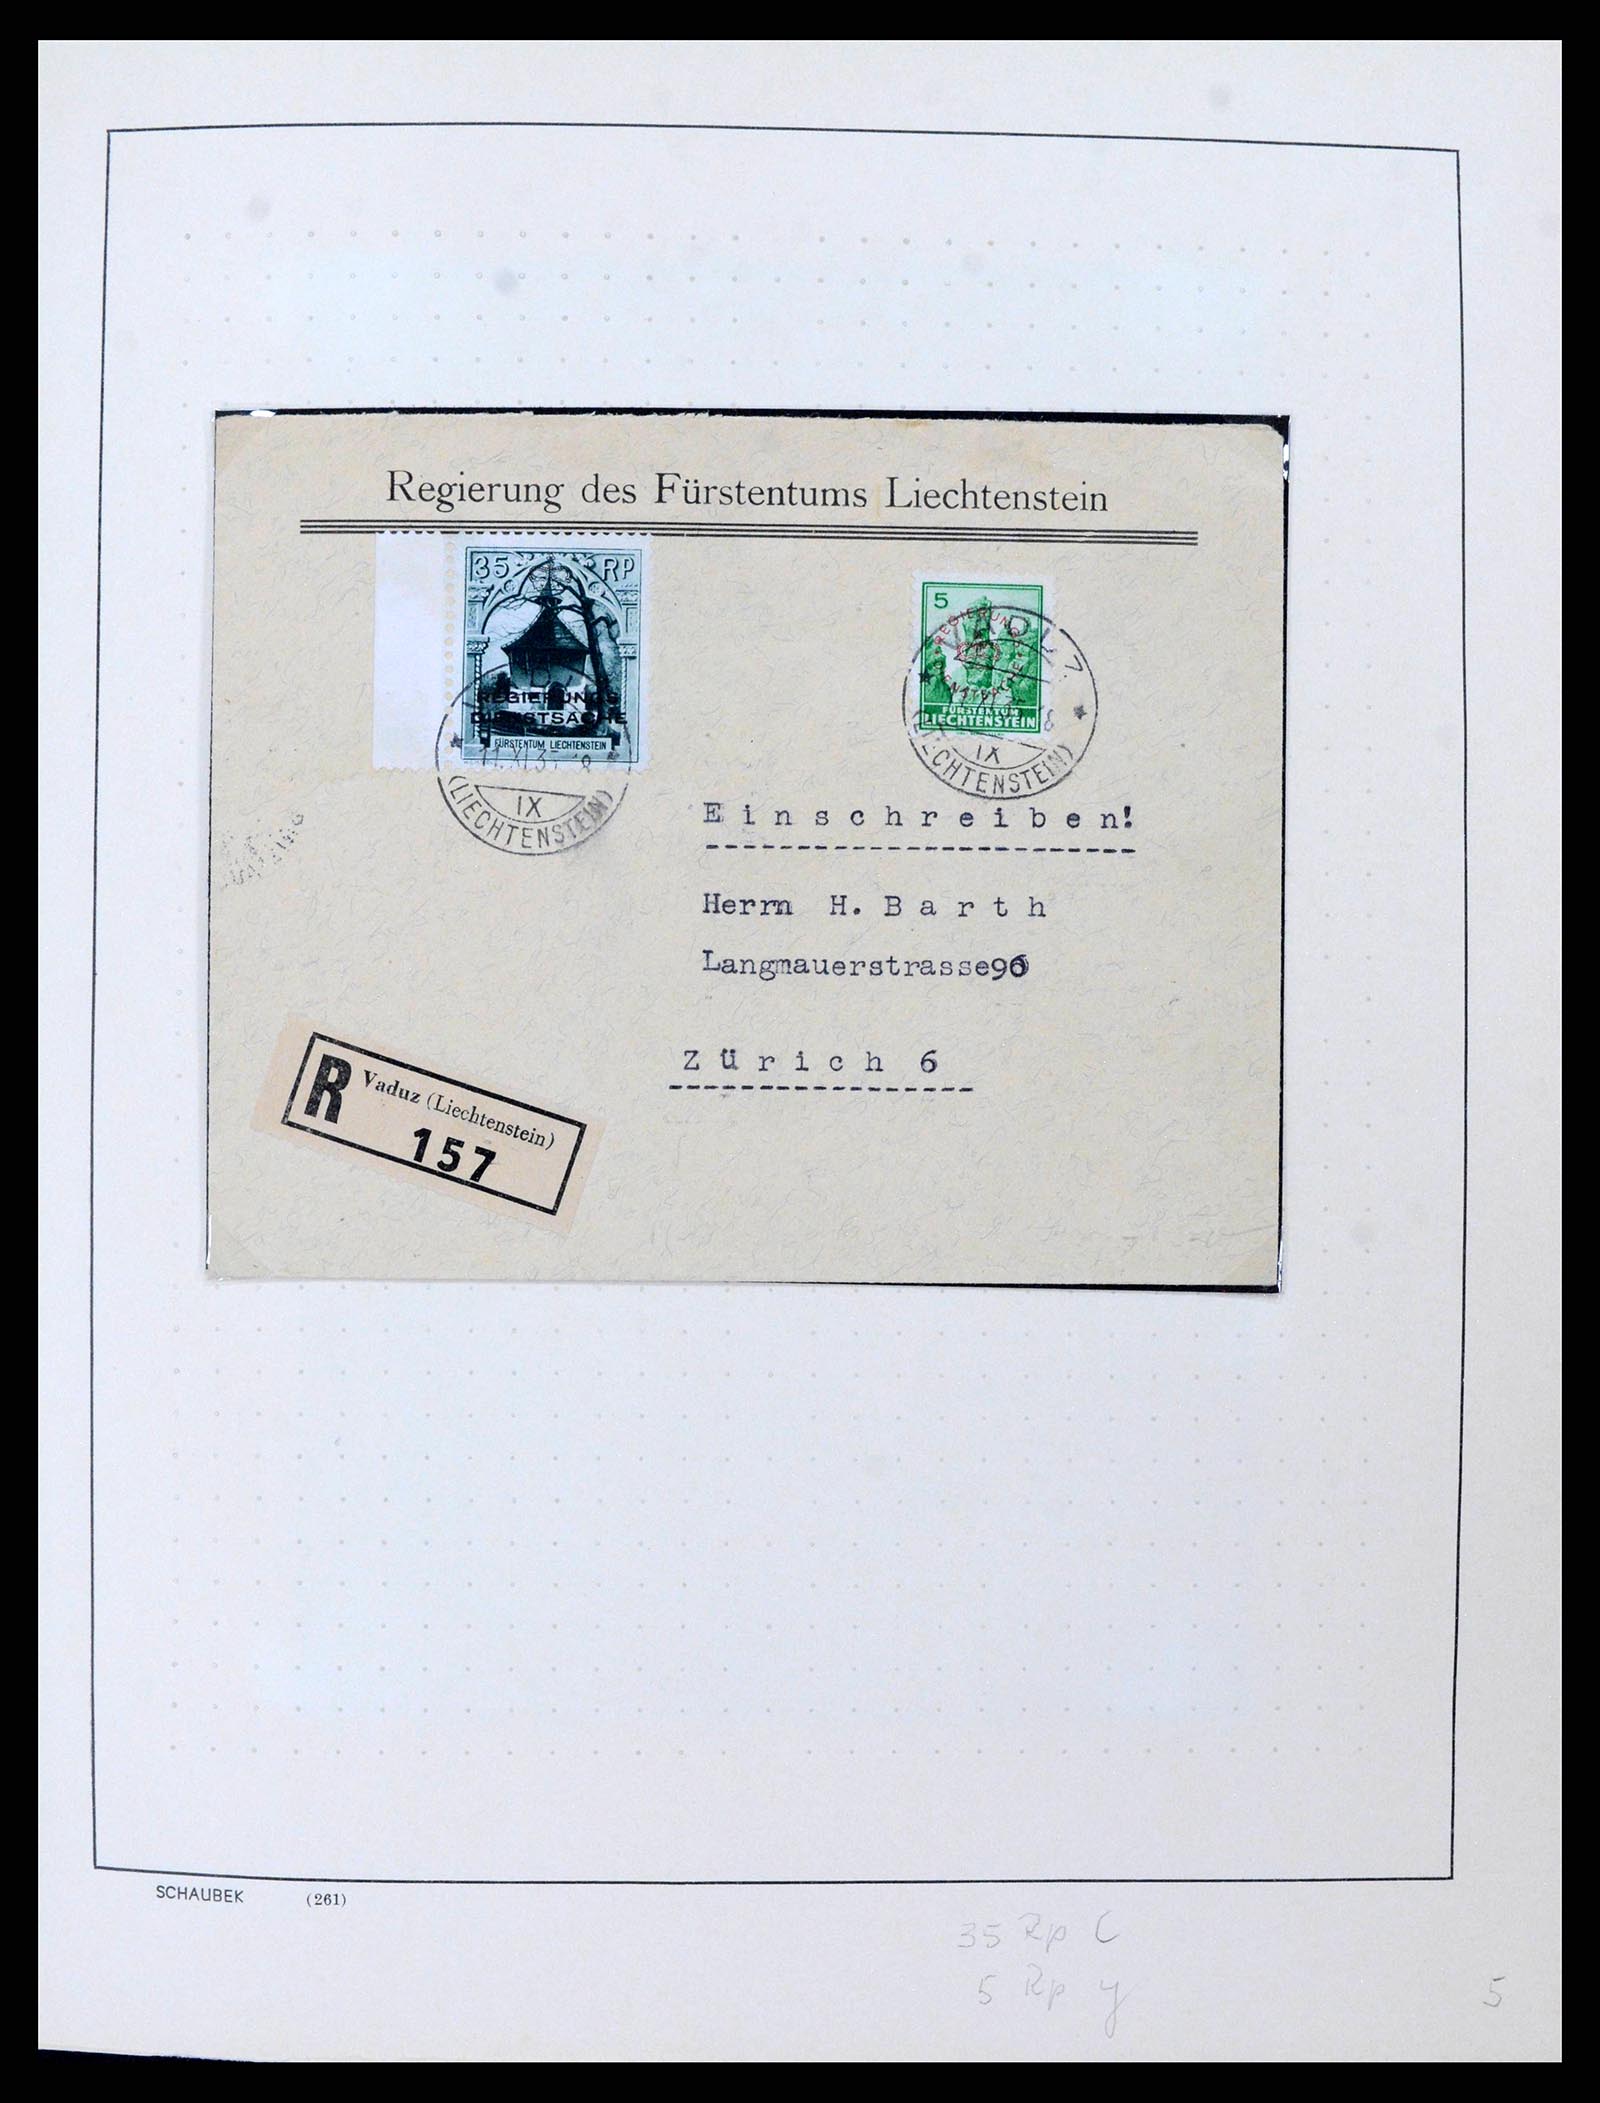 38204 0005 - Stamp collection 38204 Liechtenstein service covers 1932-1989.